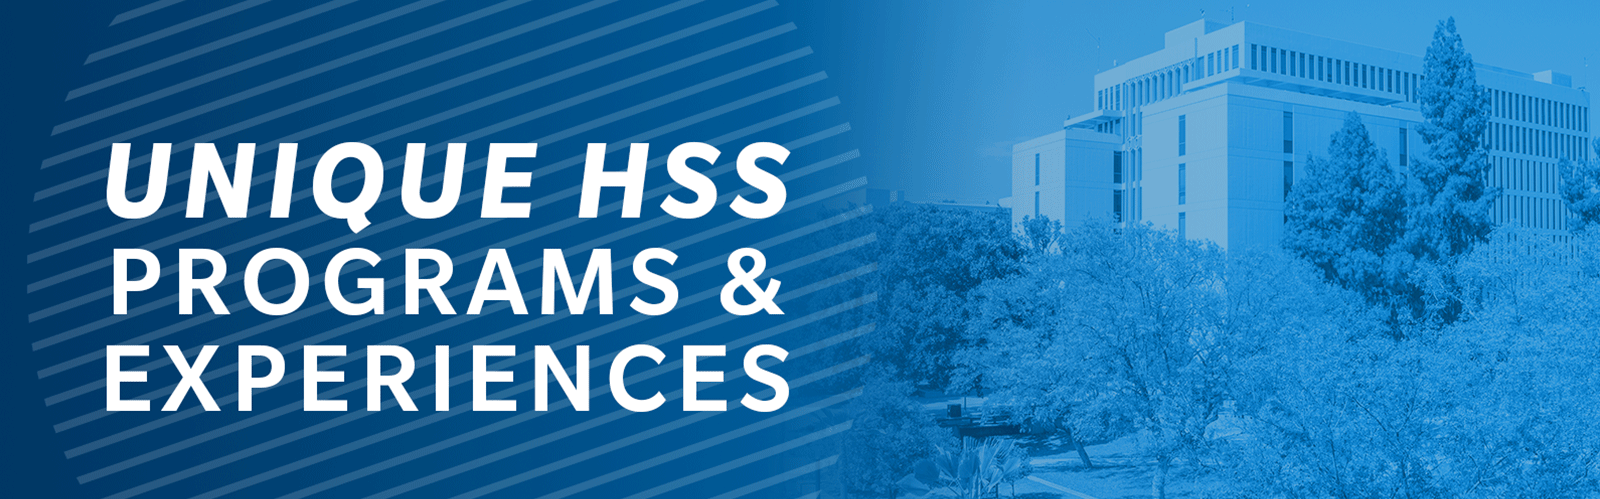 Unique HSS Programs and Experiences